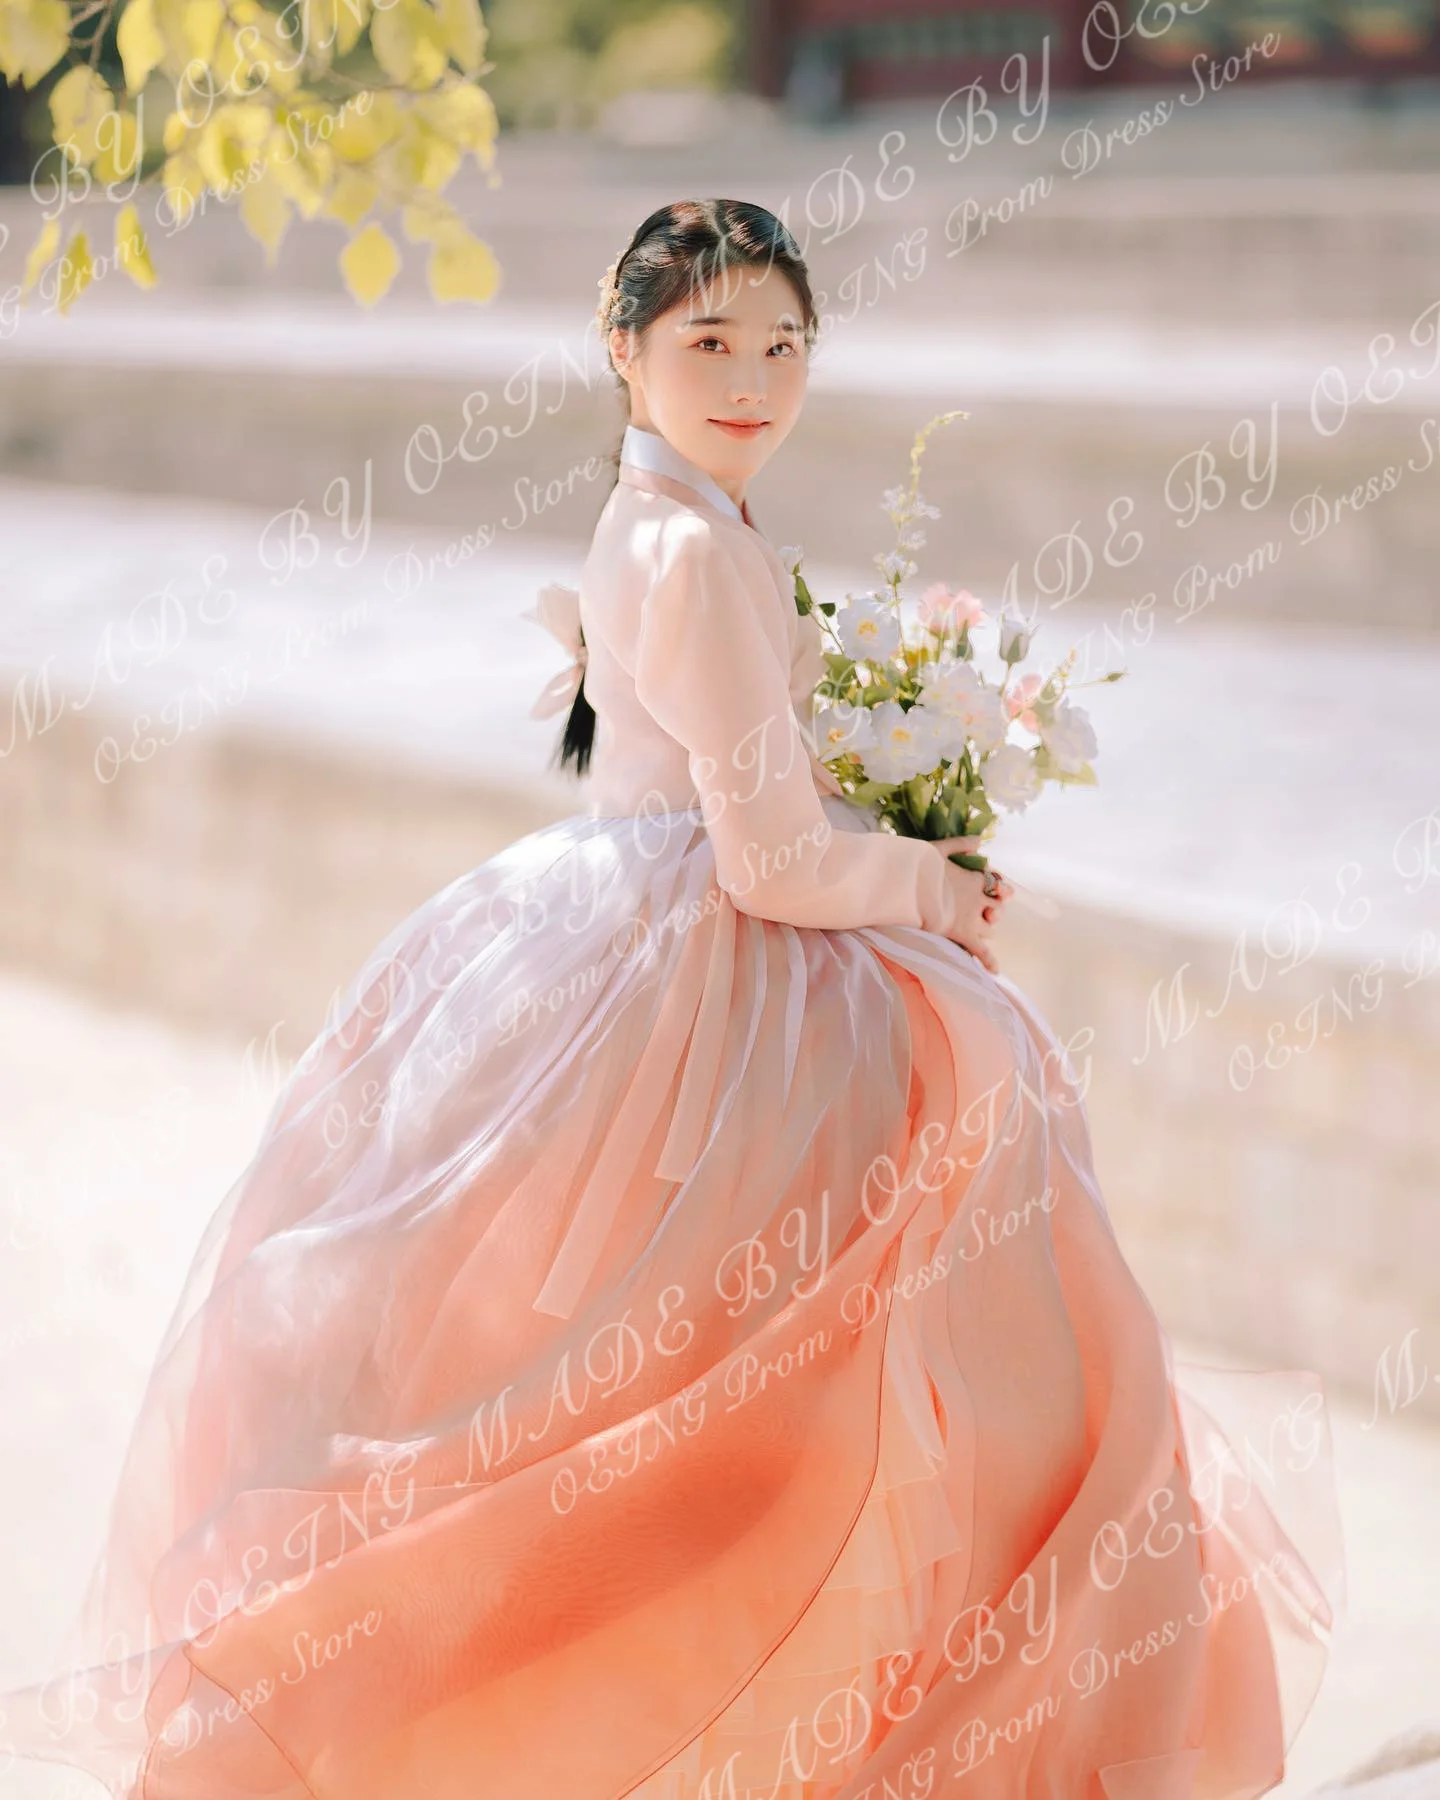 OEING Korea Blush Pink Porm Suknelės Elegantiškos Organza ilgomis rankovėmis Grindų ilgis Tiulis Pakopinis A linijos vakariniai chalatai fotosesijai